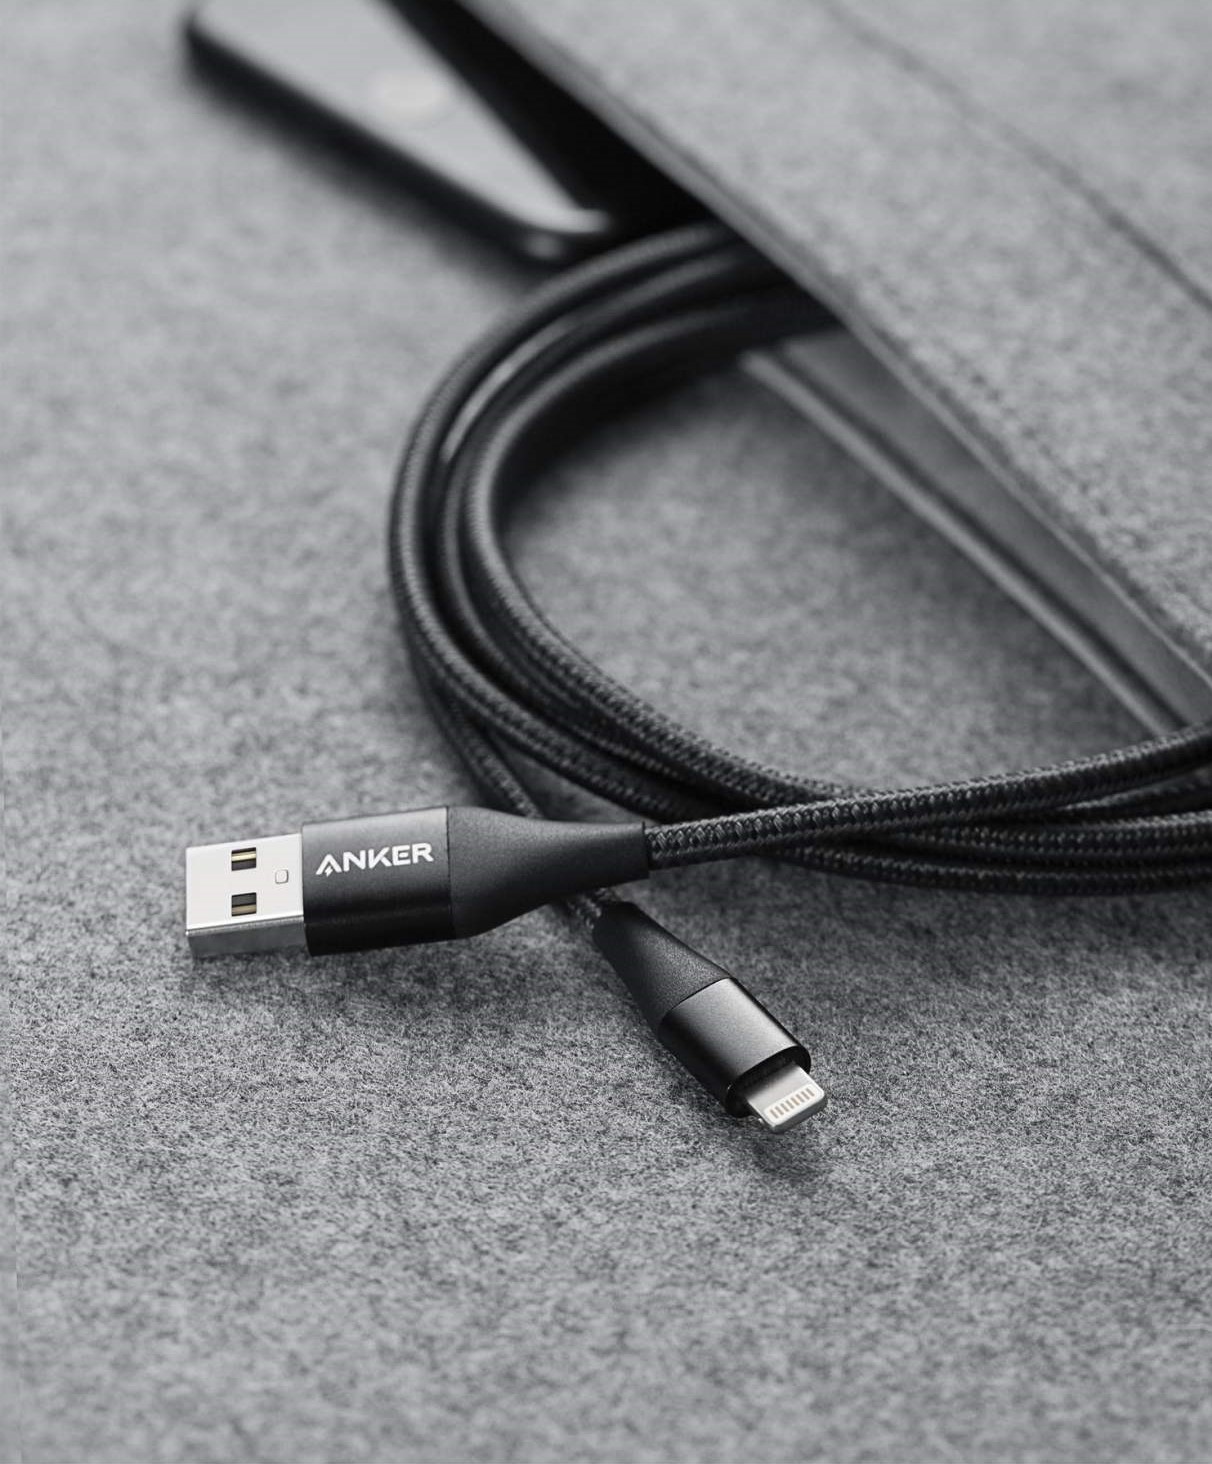 کابل تبدیل USB به لایتنینگ انکر مدل A8453 PowerLine II Plus طول 1.8 متر thumb 130